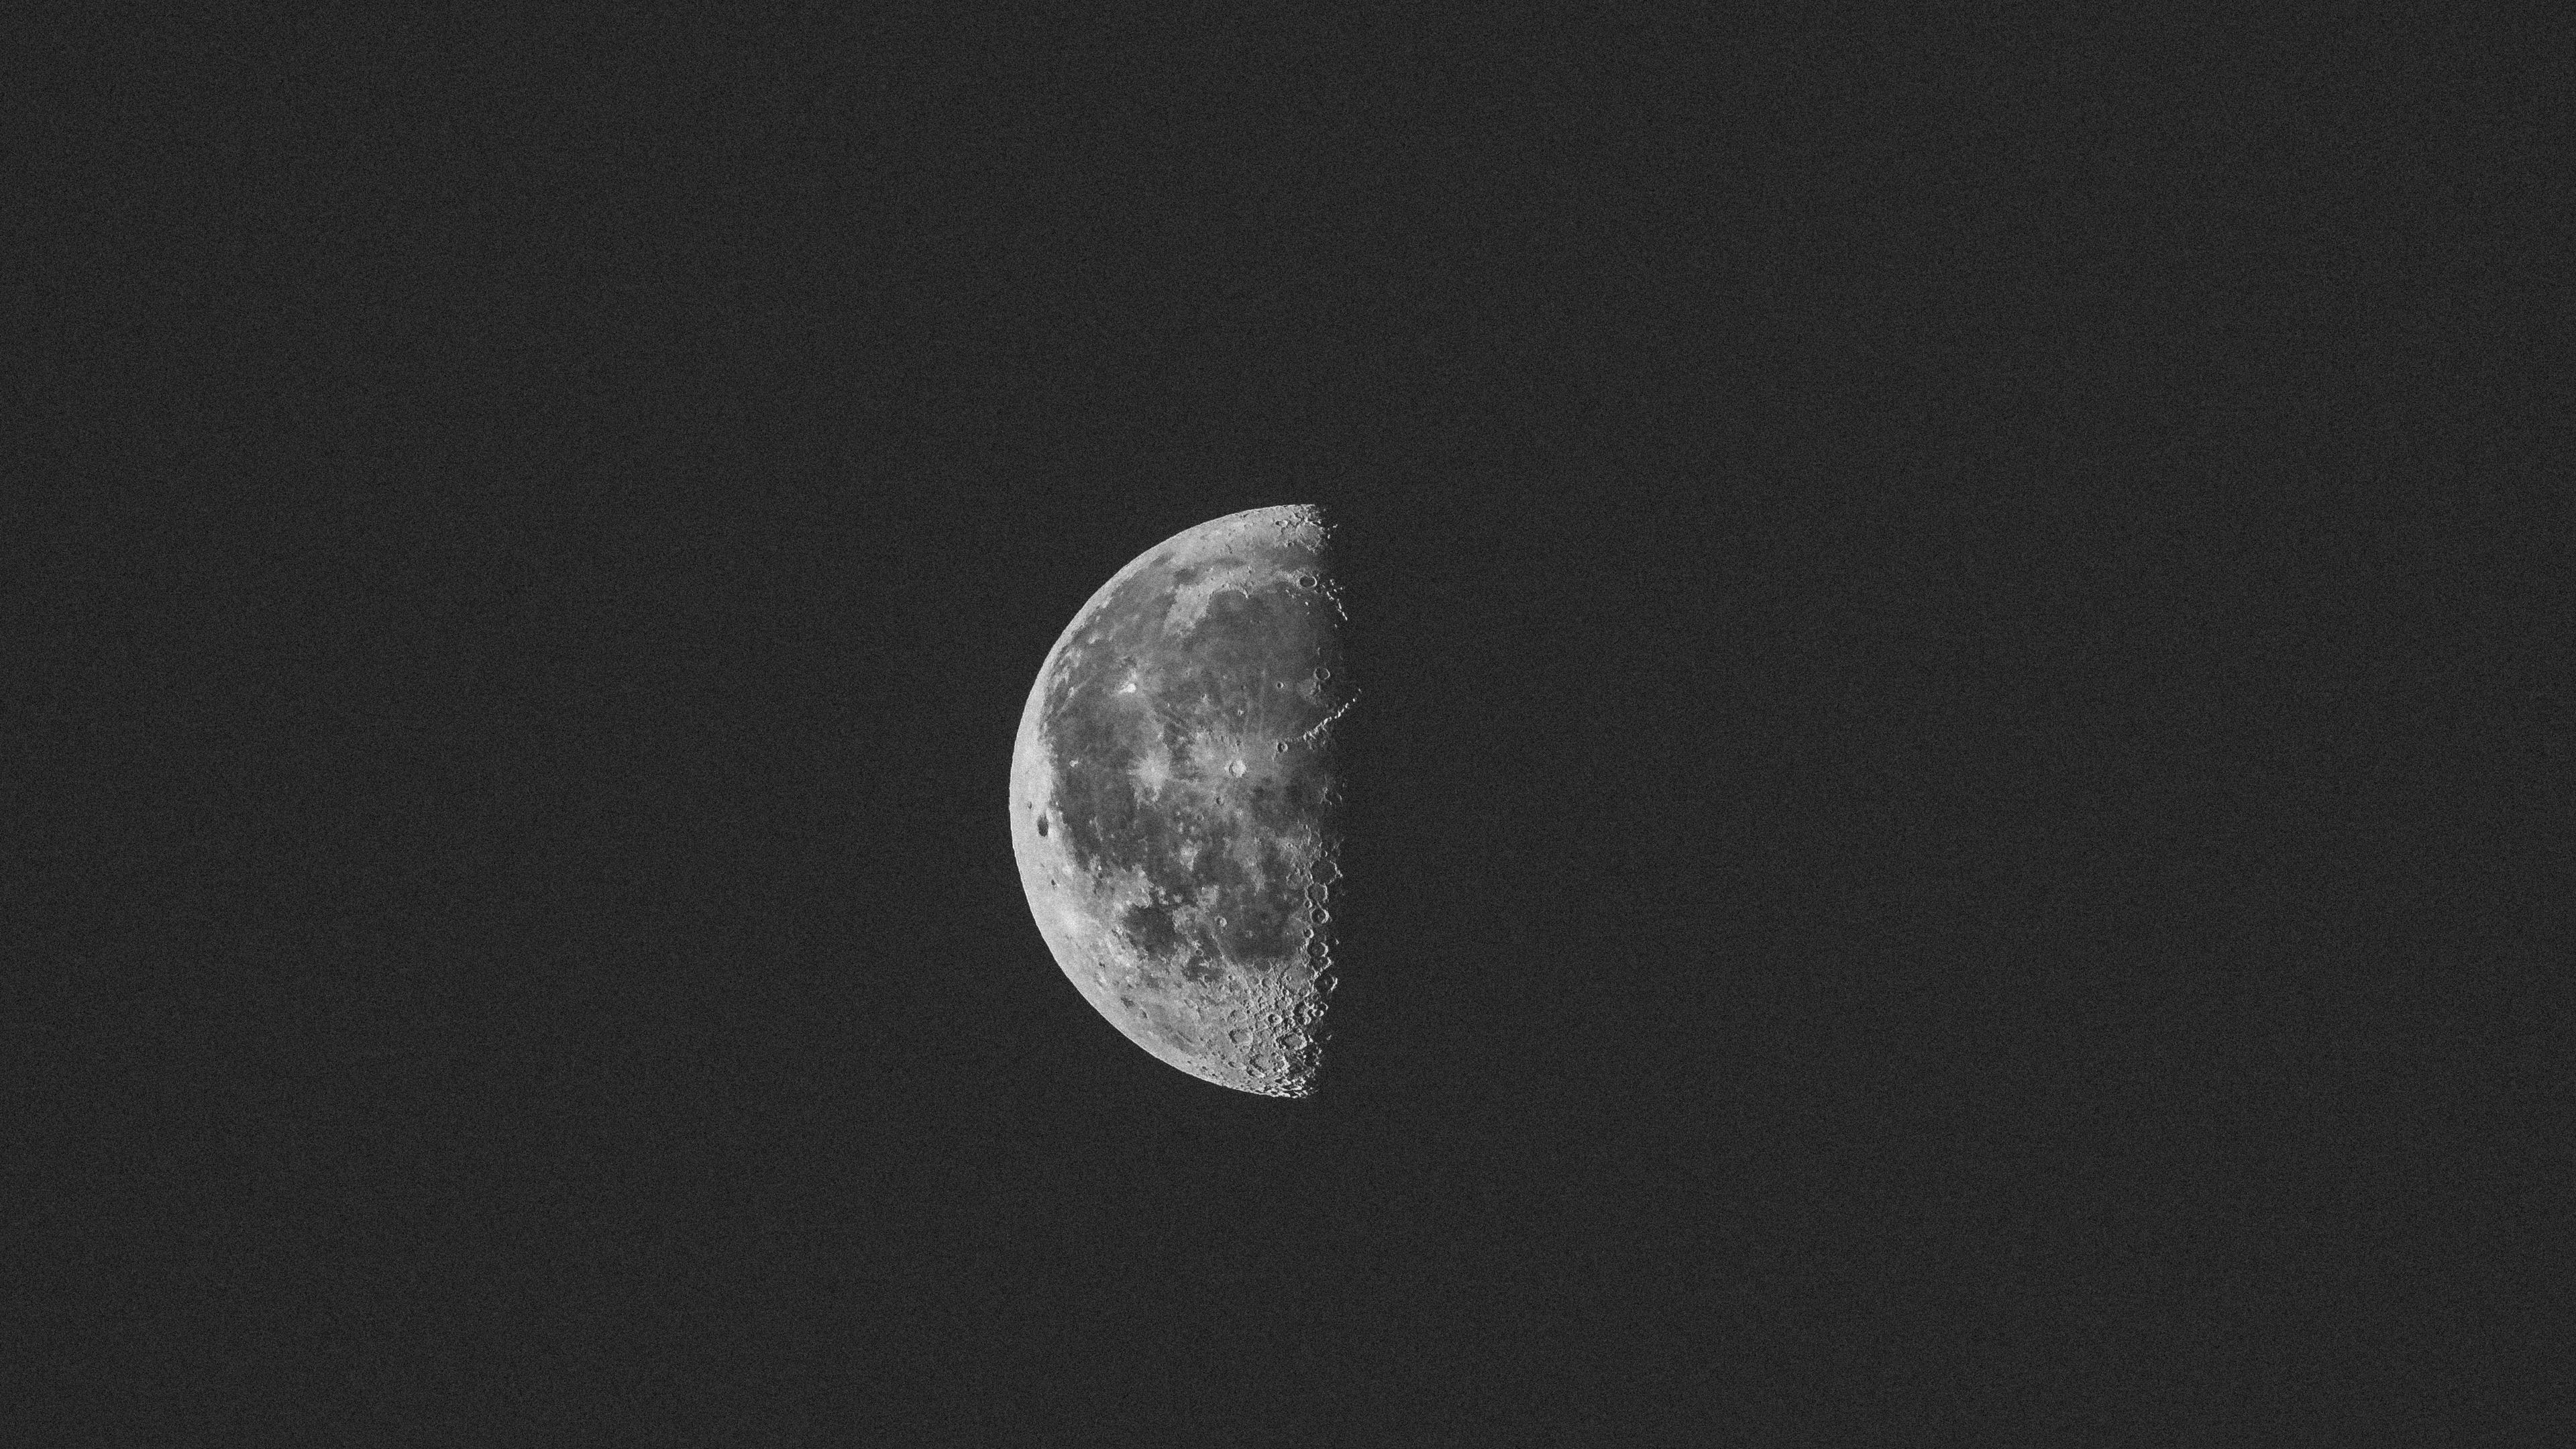 dark night moon 4k 1540142463 - Dark Night Moon 4k - photography wallpapers, night wallpapers, nature wallpapers, moon wallpapers, hd-wallpapers, 5k wallpapers, 4k-wallpapers